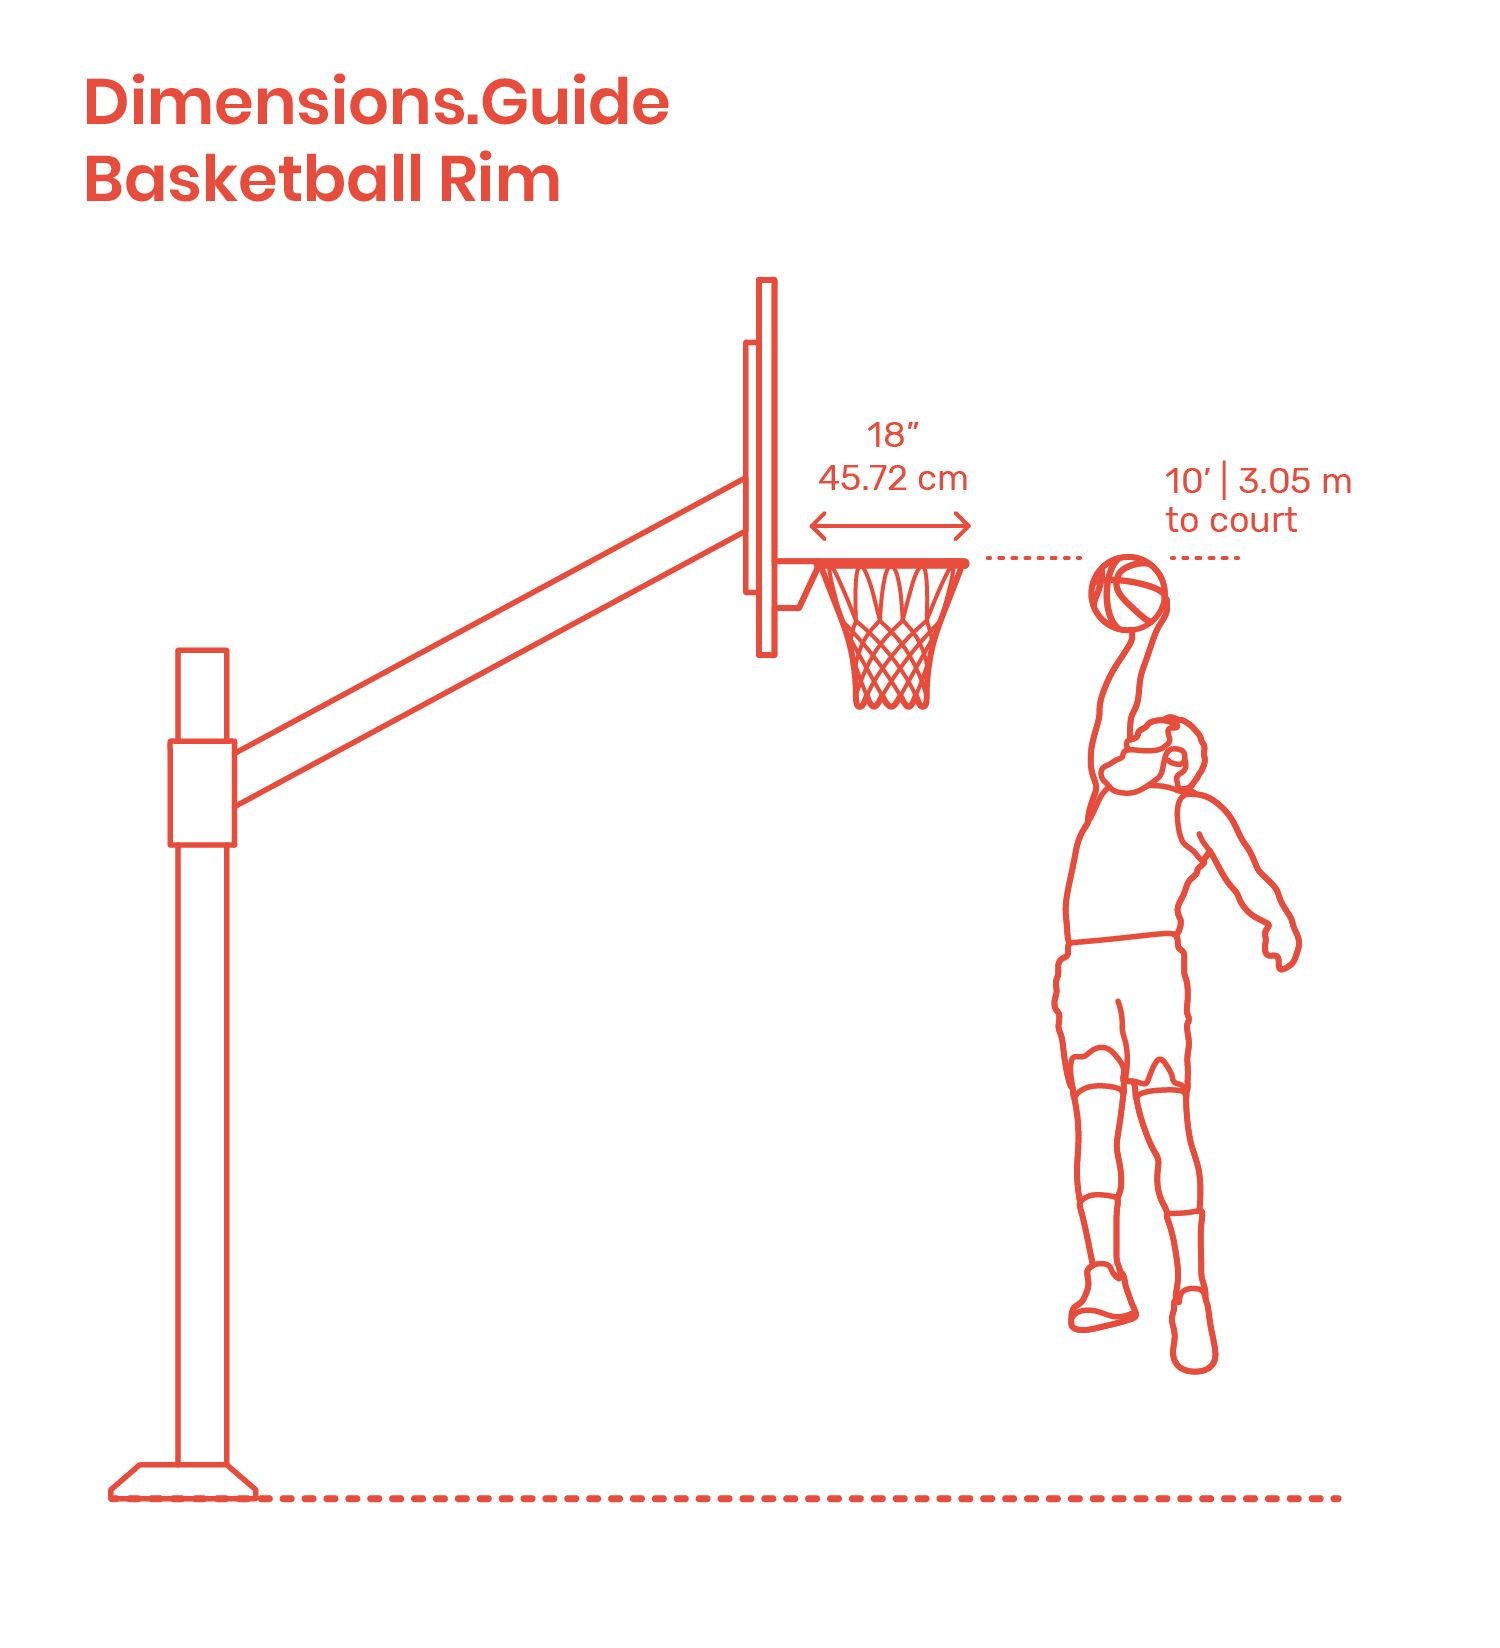 Какая высота спортивного. Высота баскетбольного кольца от уровня пола стандарт. Стандарт высоты баскетбольного кольца НБА. Высота баскетбольного кольца в НБА от пола. Баскетбольное кольцо NBA высота.